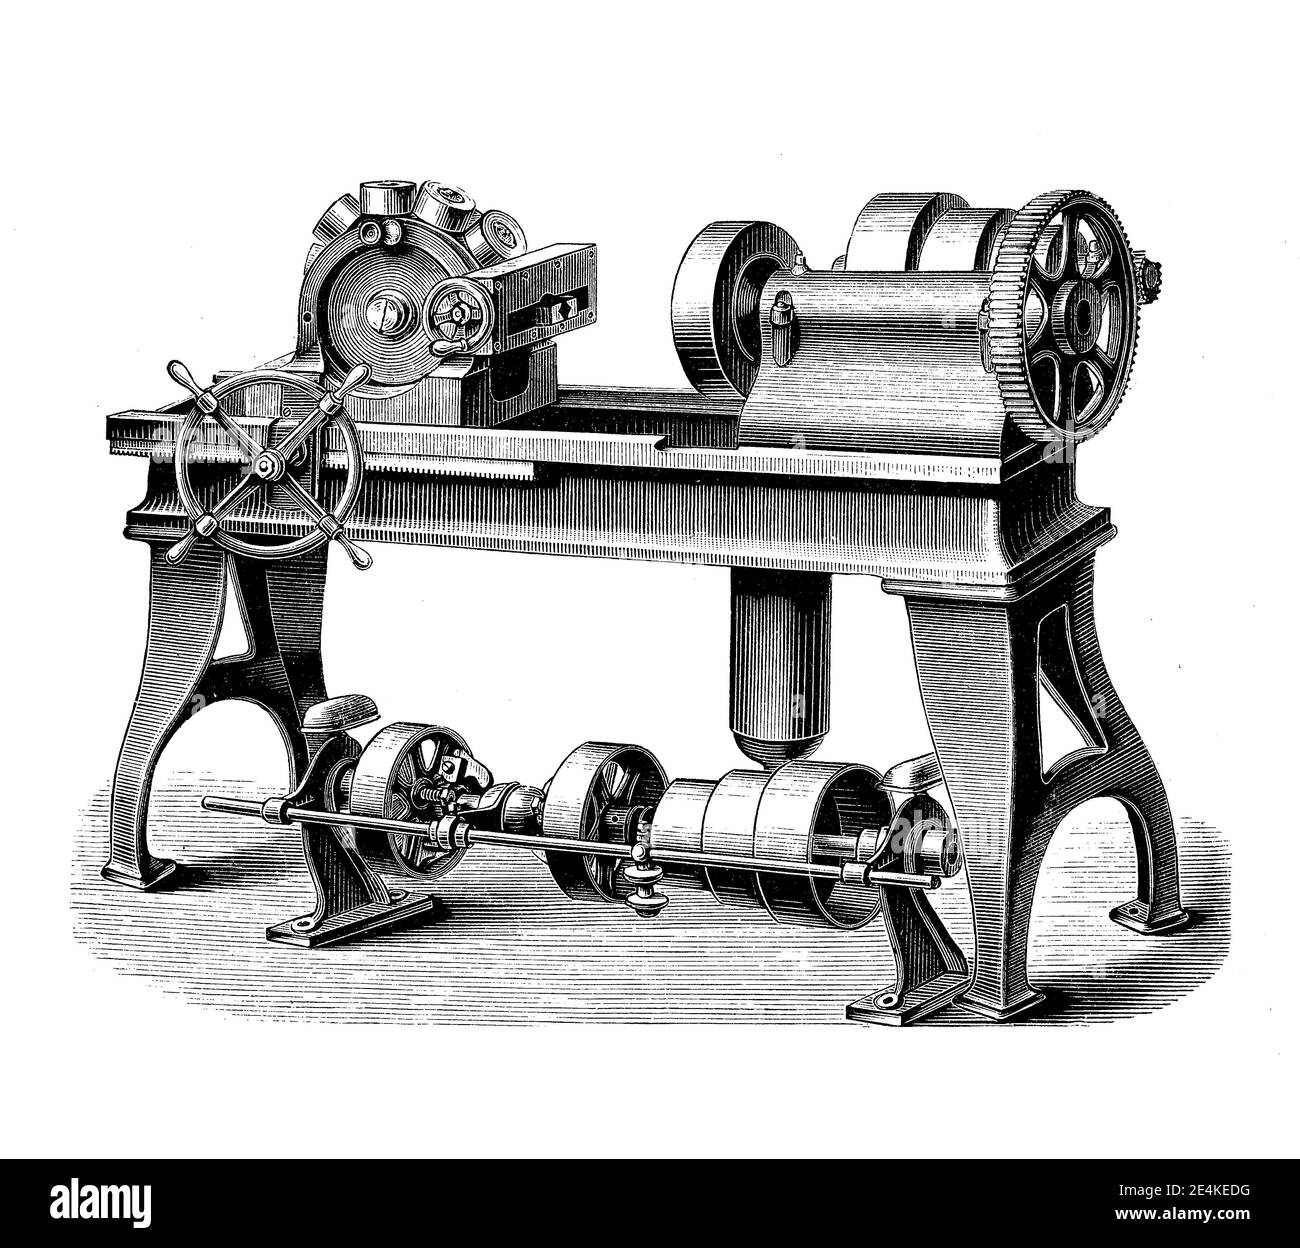 La máquina de cortador de pernos con cabeza de torreta permite realizar operaciones de corte, secuencialmente cada una con una herramienta de corte diferente, grabado del siglo 19 Foto de stock